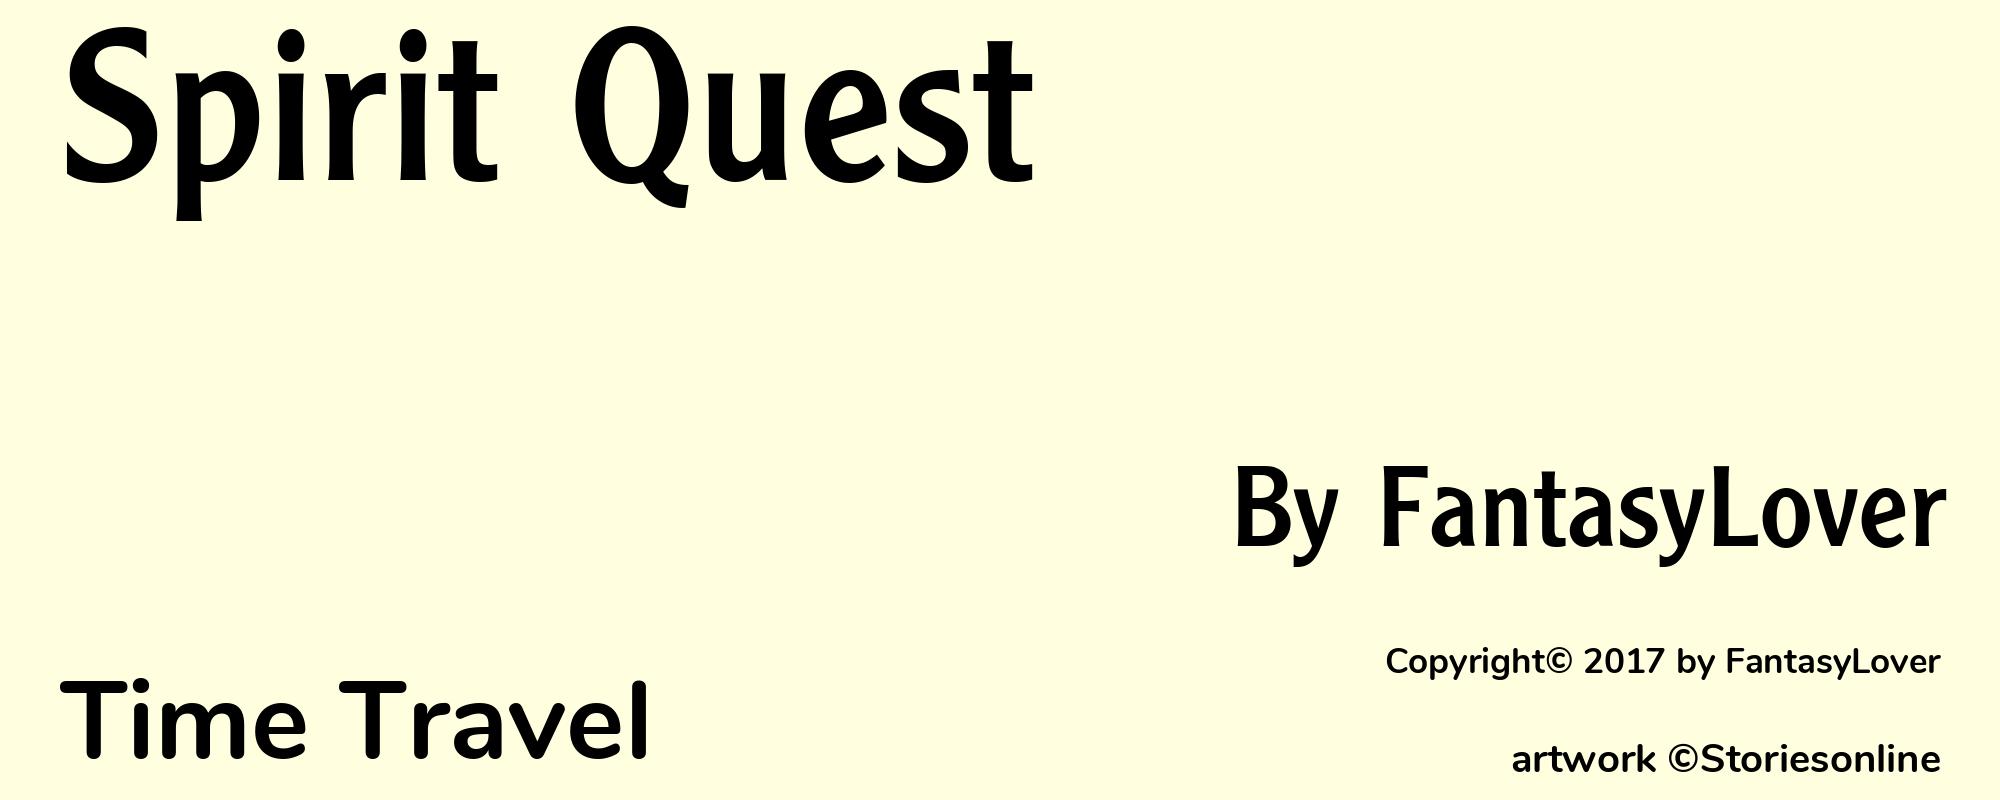 Spirit Quest - Cover